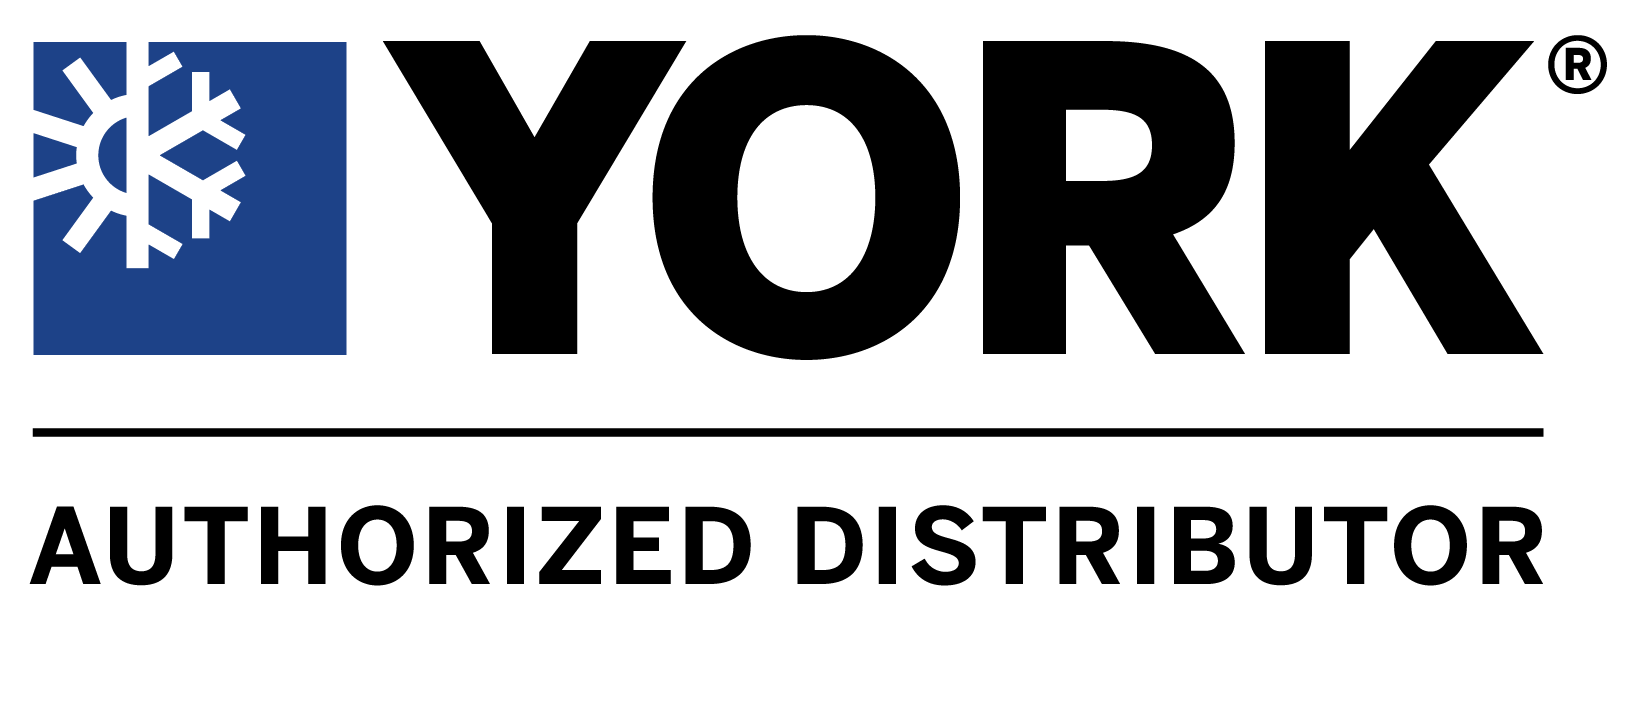 York Distributor